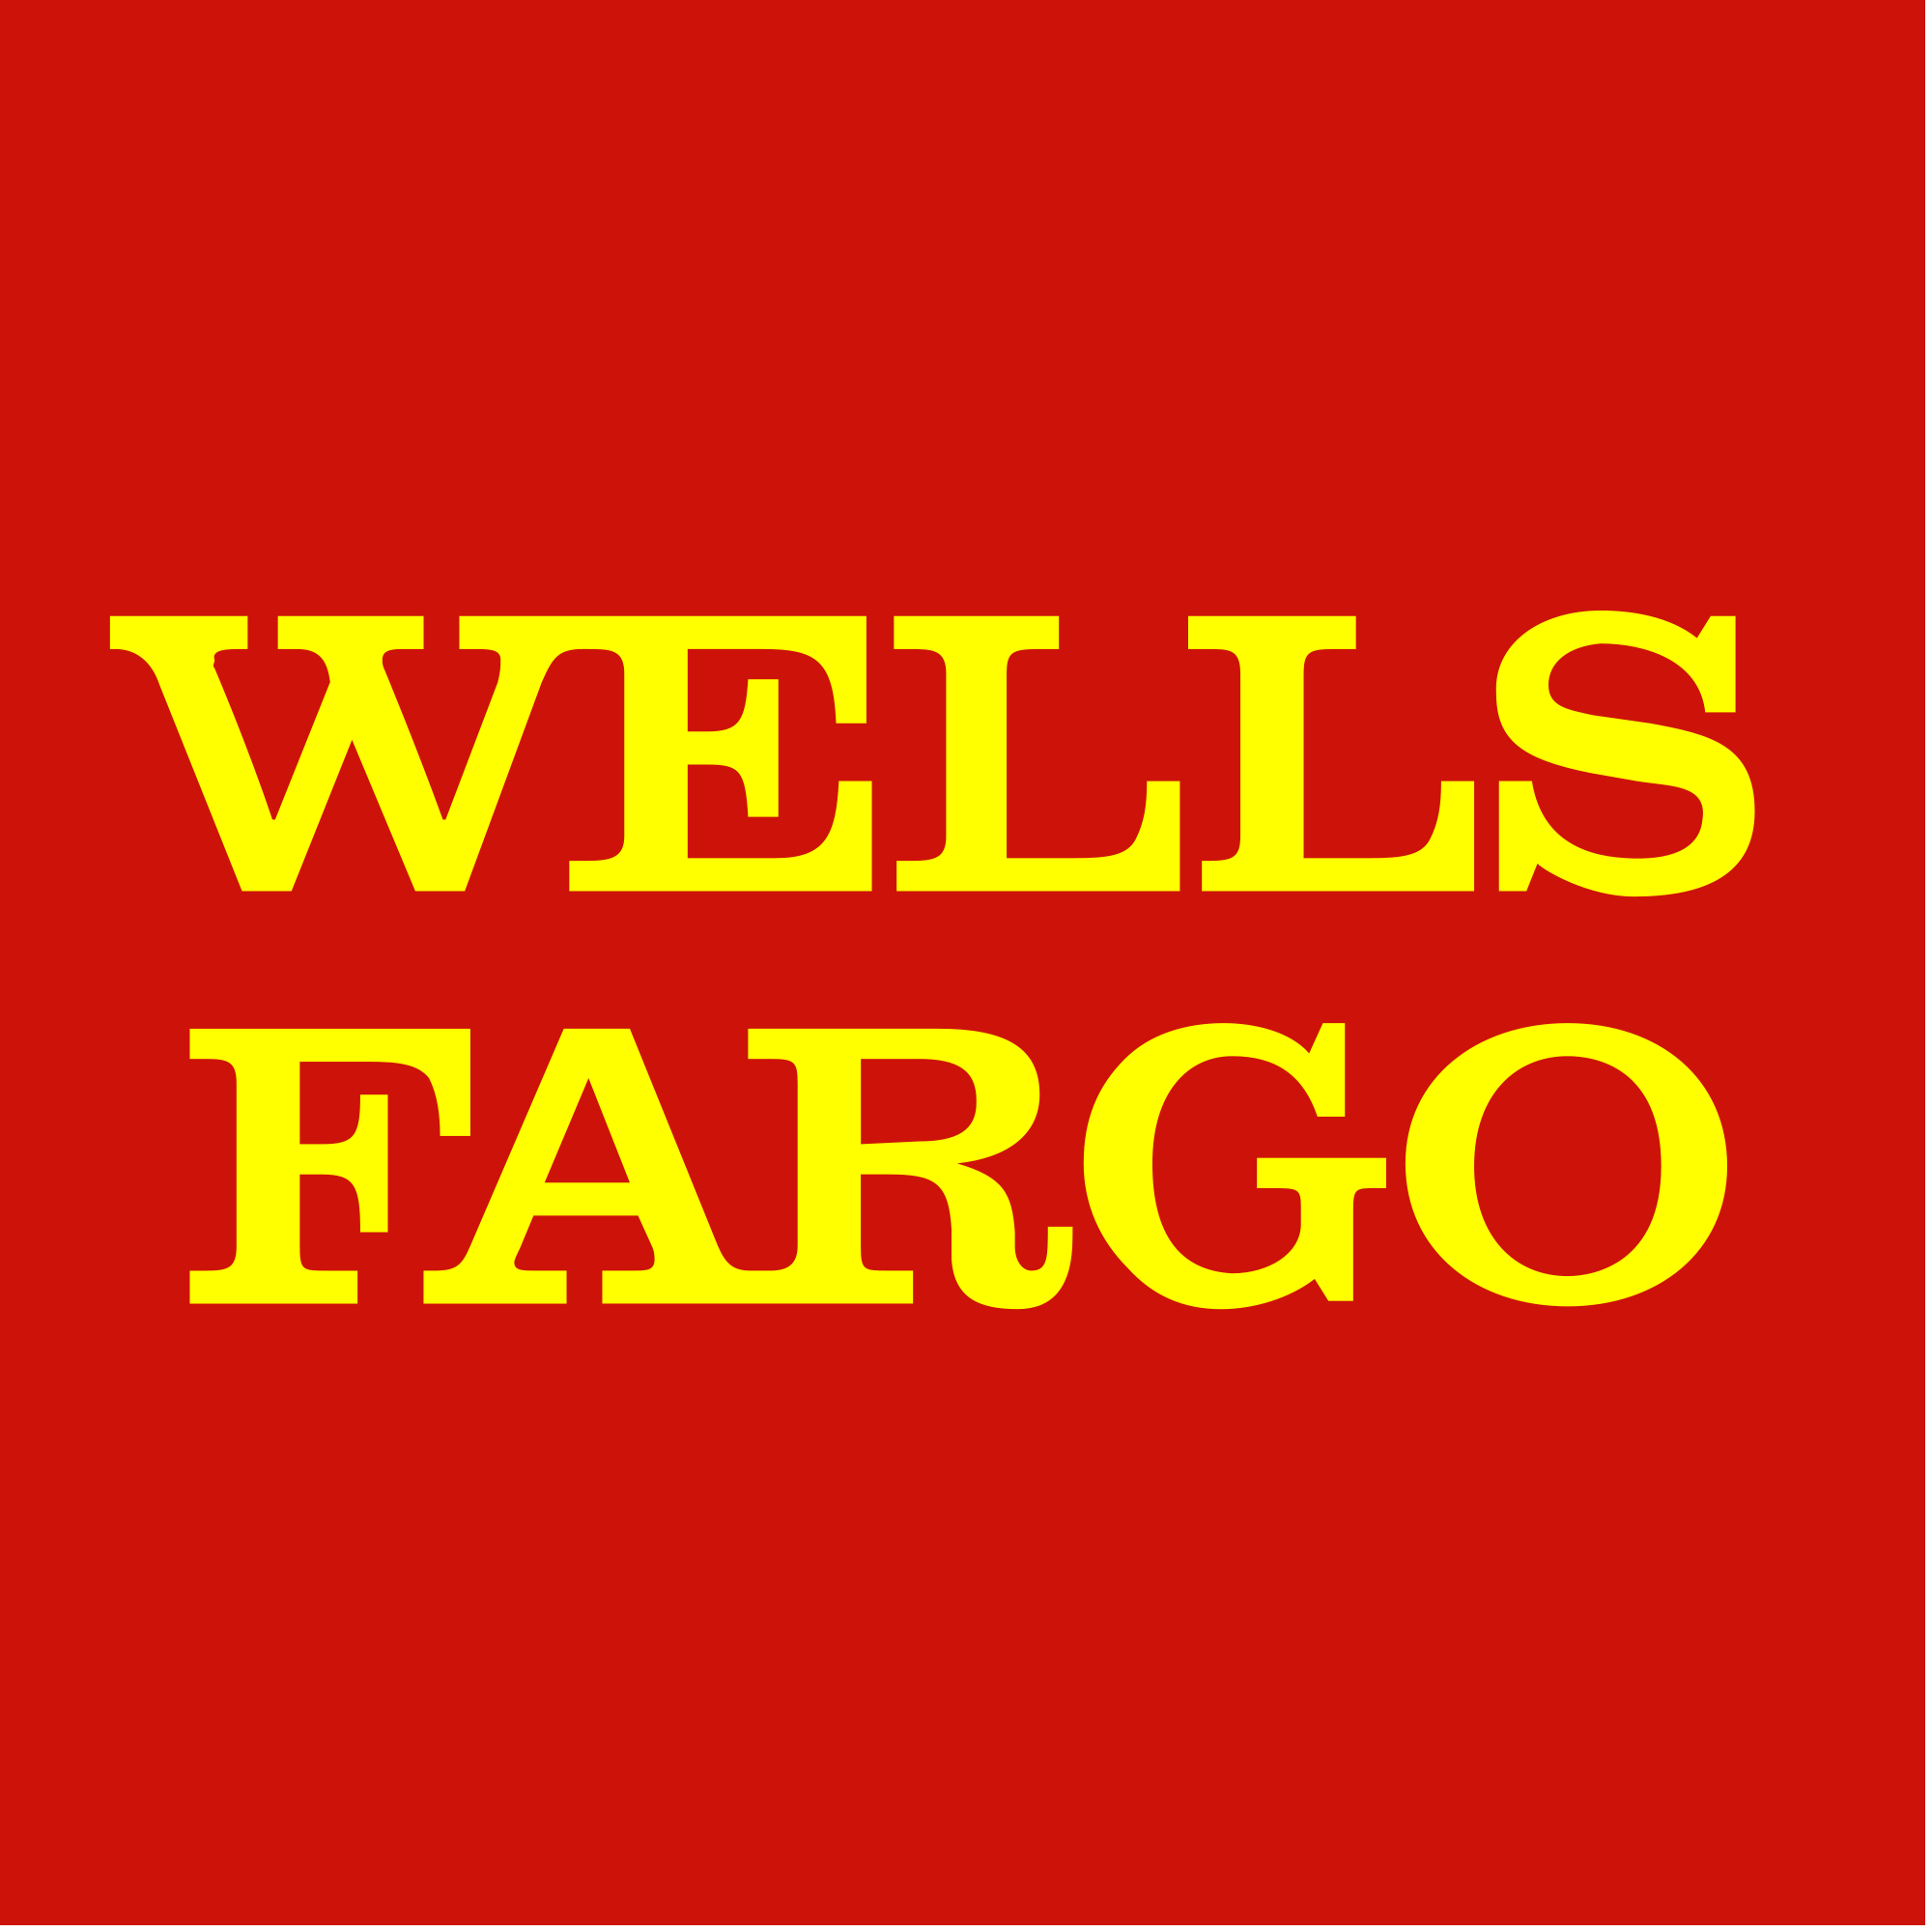 Wells-Fargo-Bank